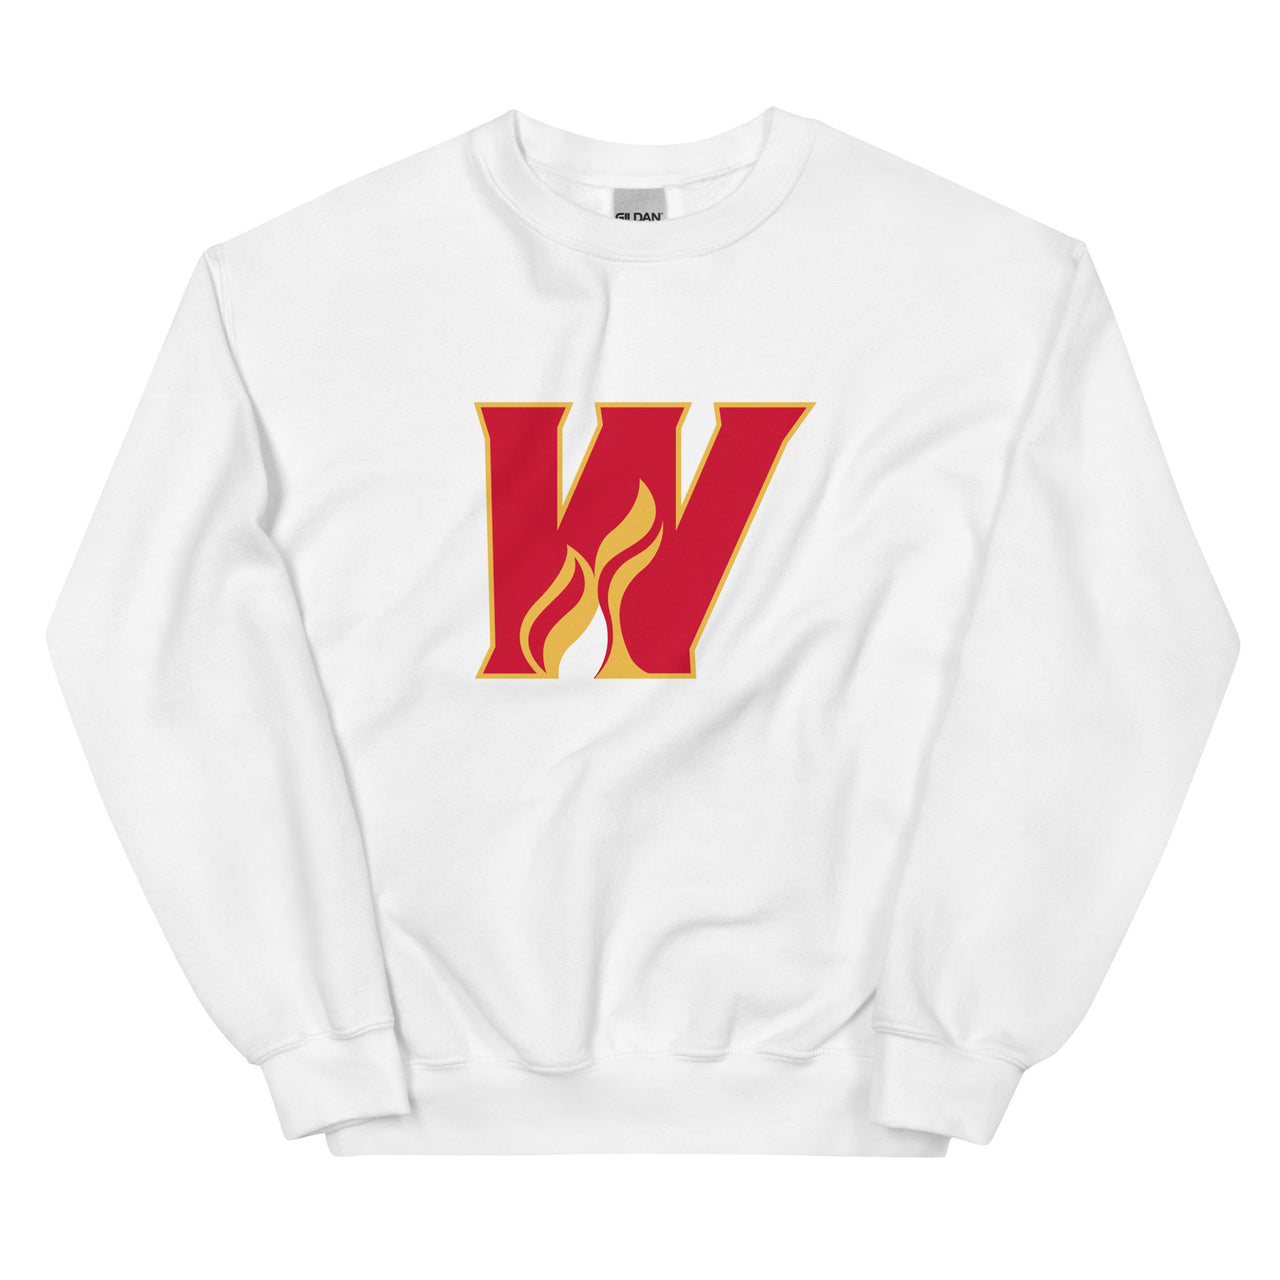 Calgary Wranglers Adult Primary Logo Crewneck Sweatshirt